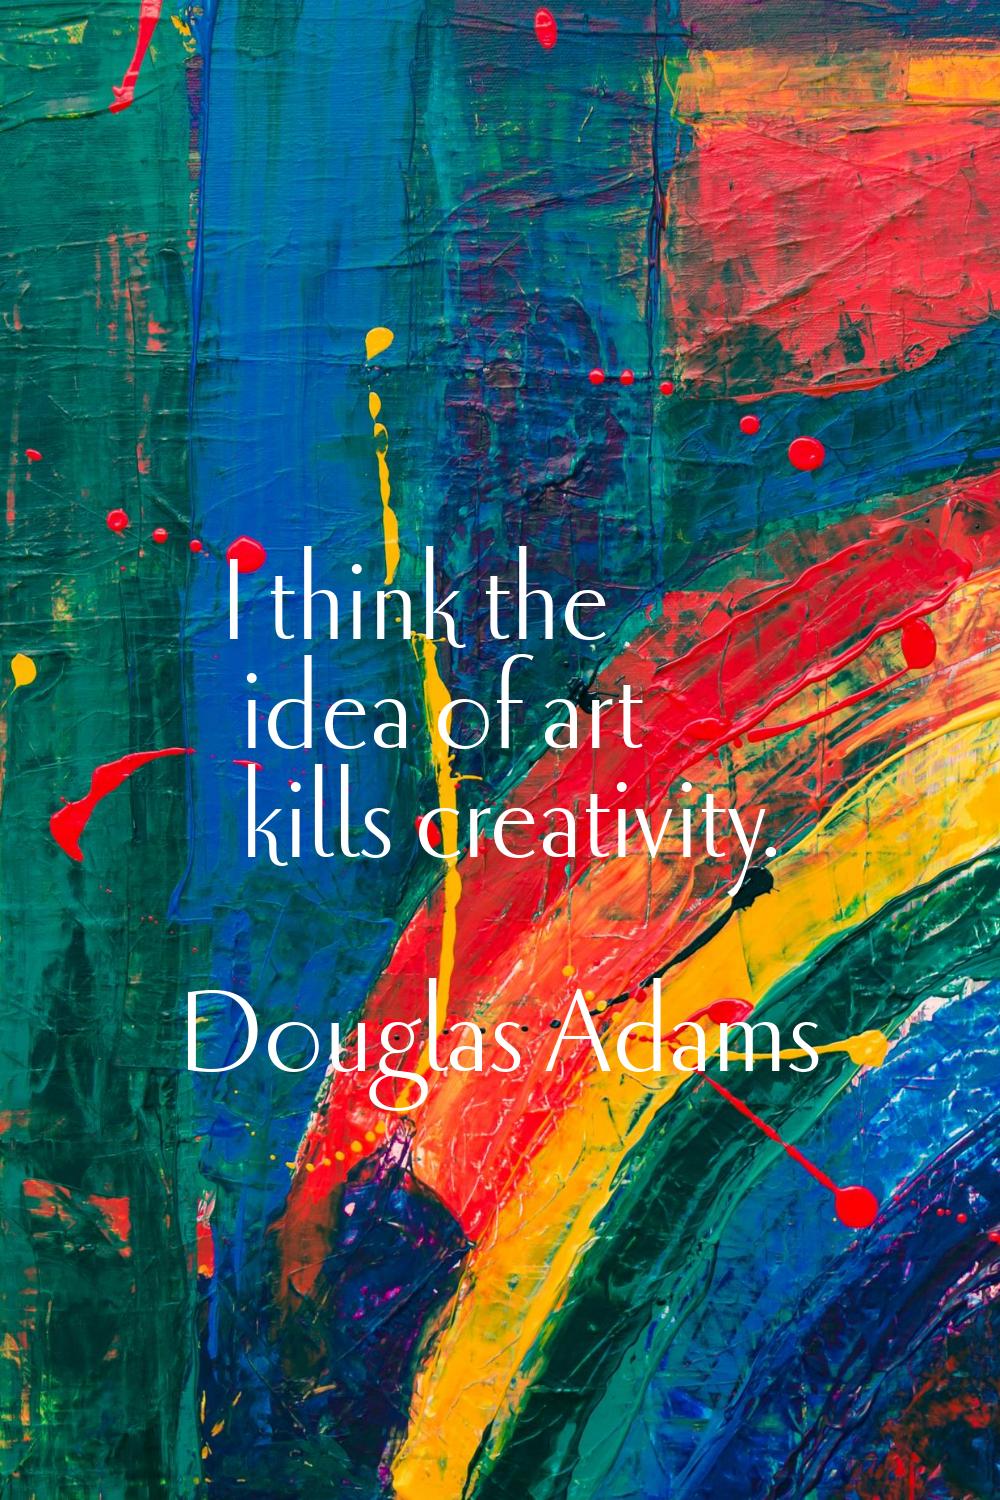 I think the idea of art kills creativity.